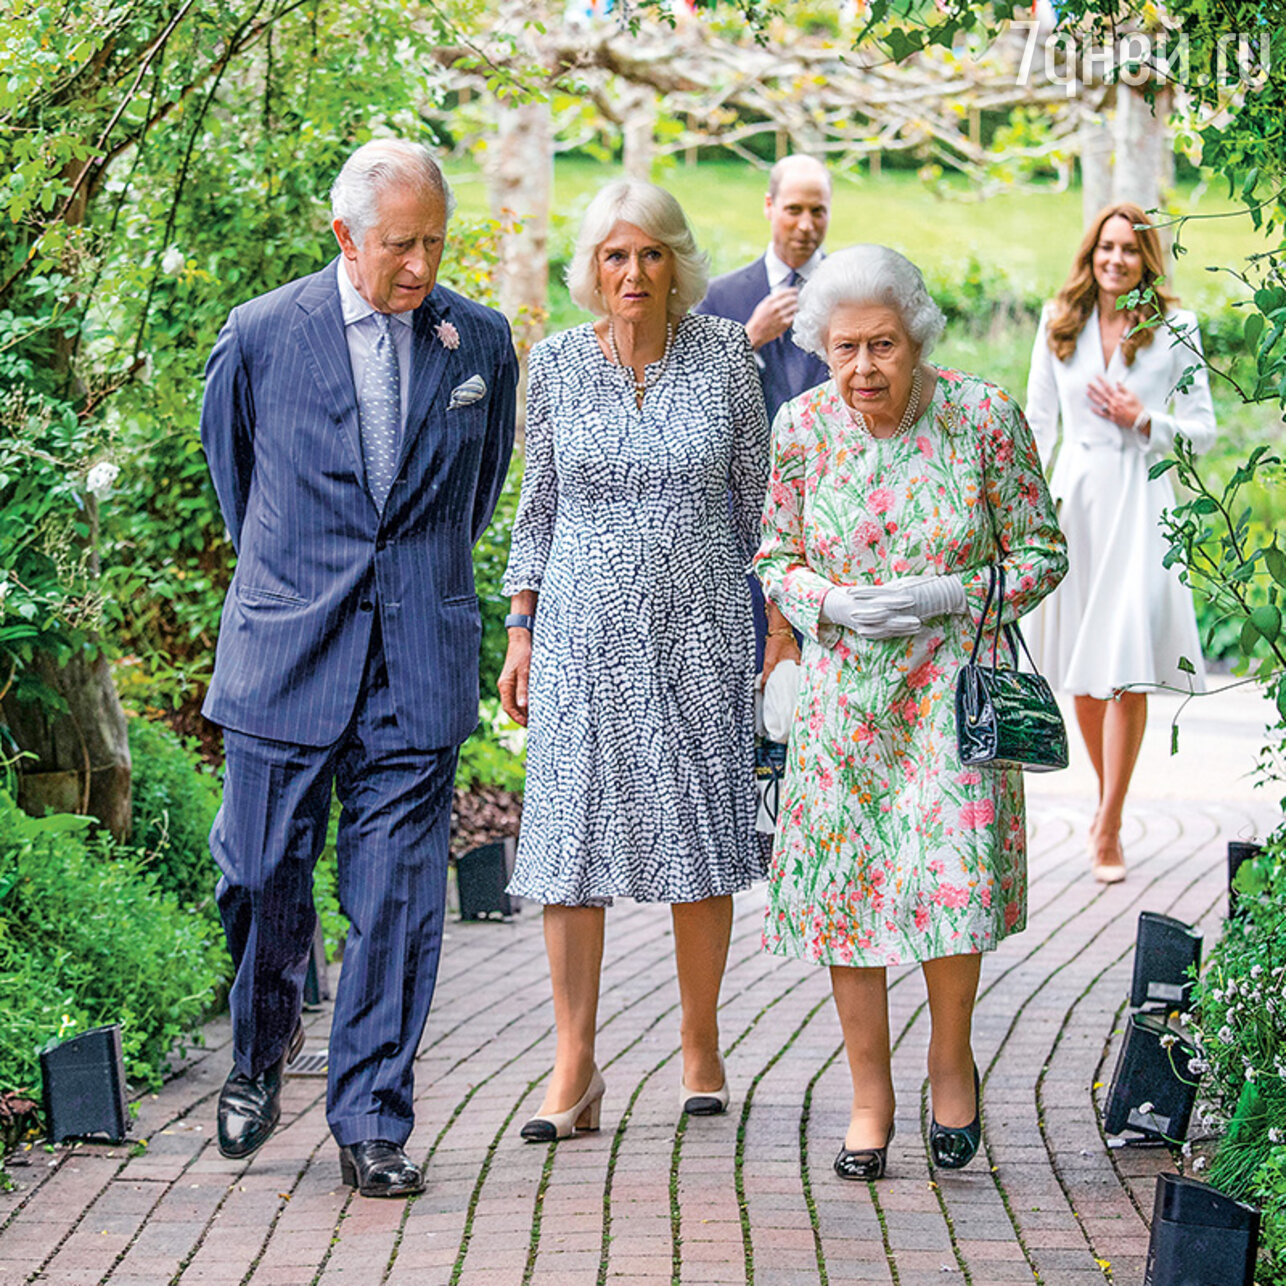 Принц Чарльз с женой Камиллой, Елизавета II, принц Уильям с женой Кэтрин